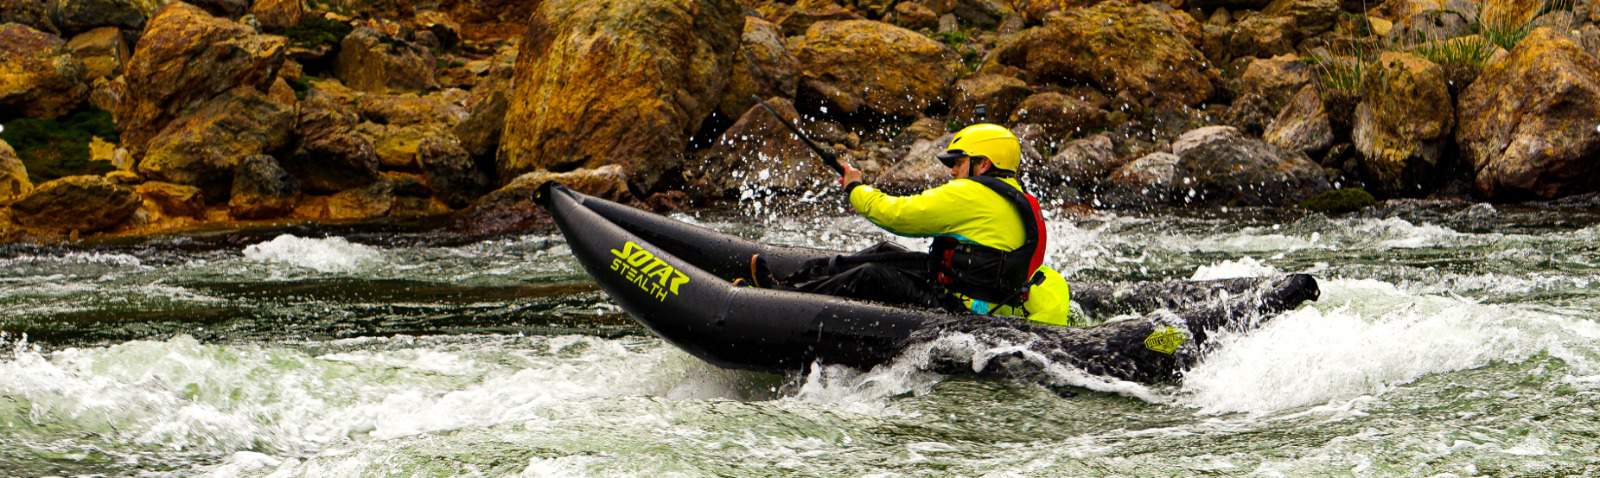 kayak hinchable ligero